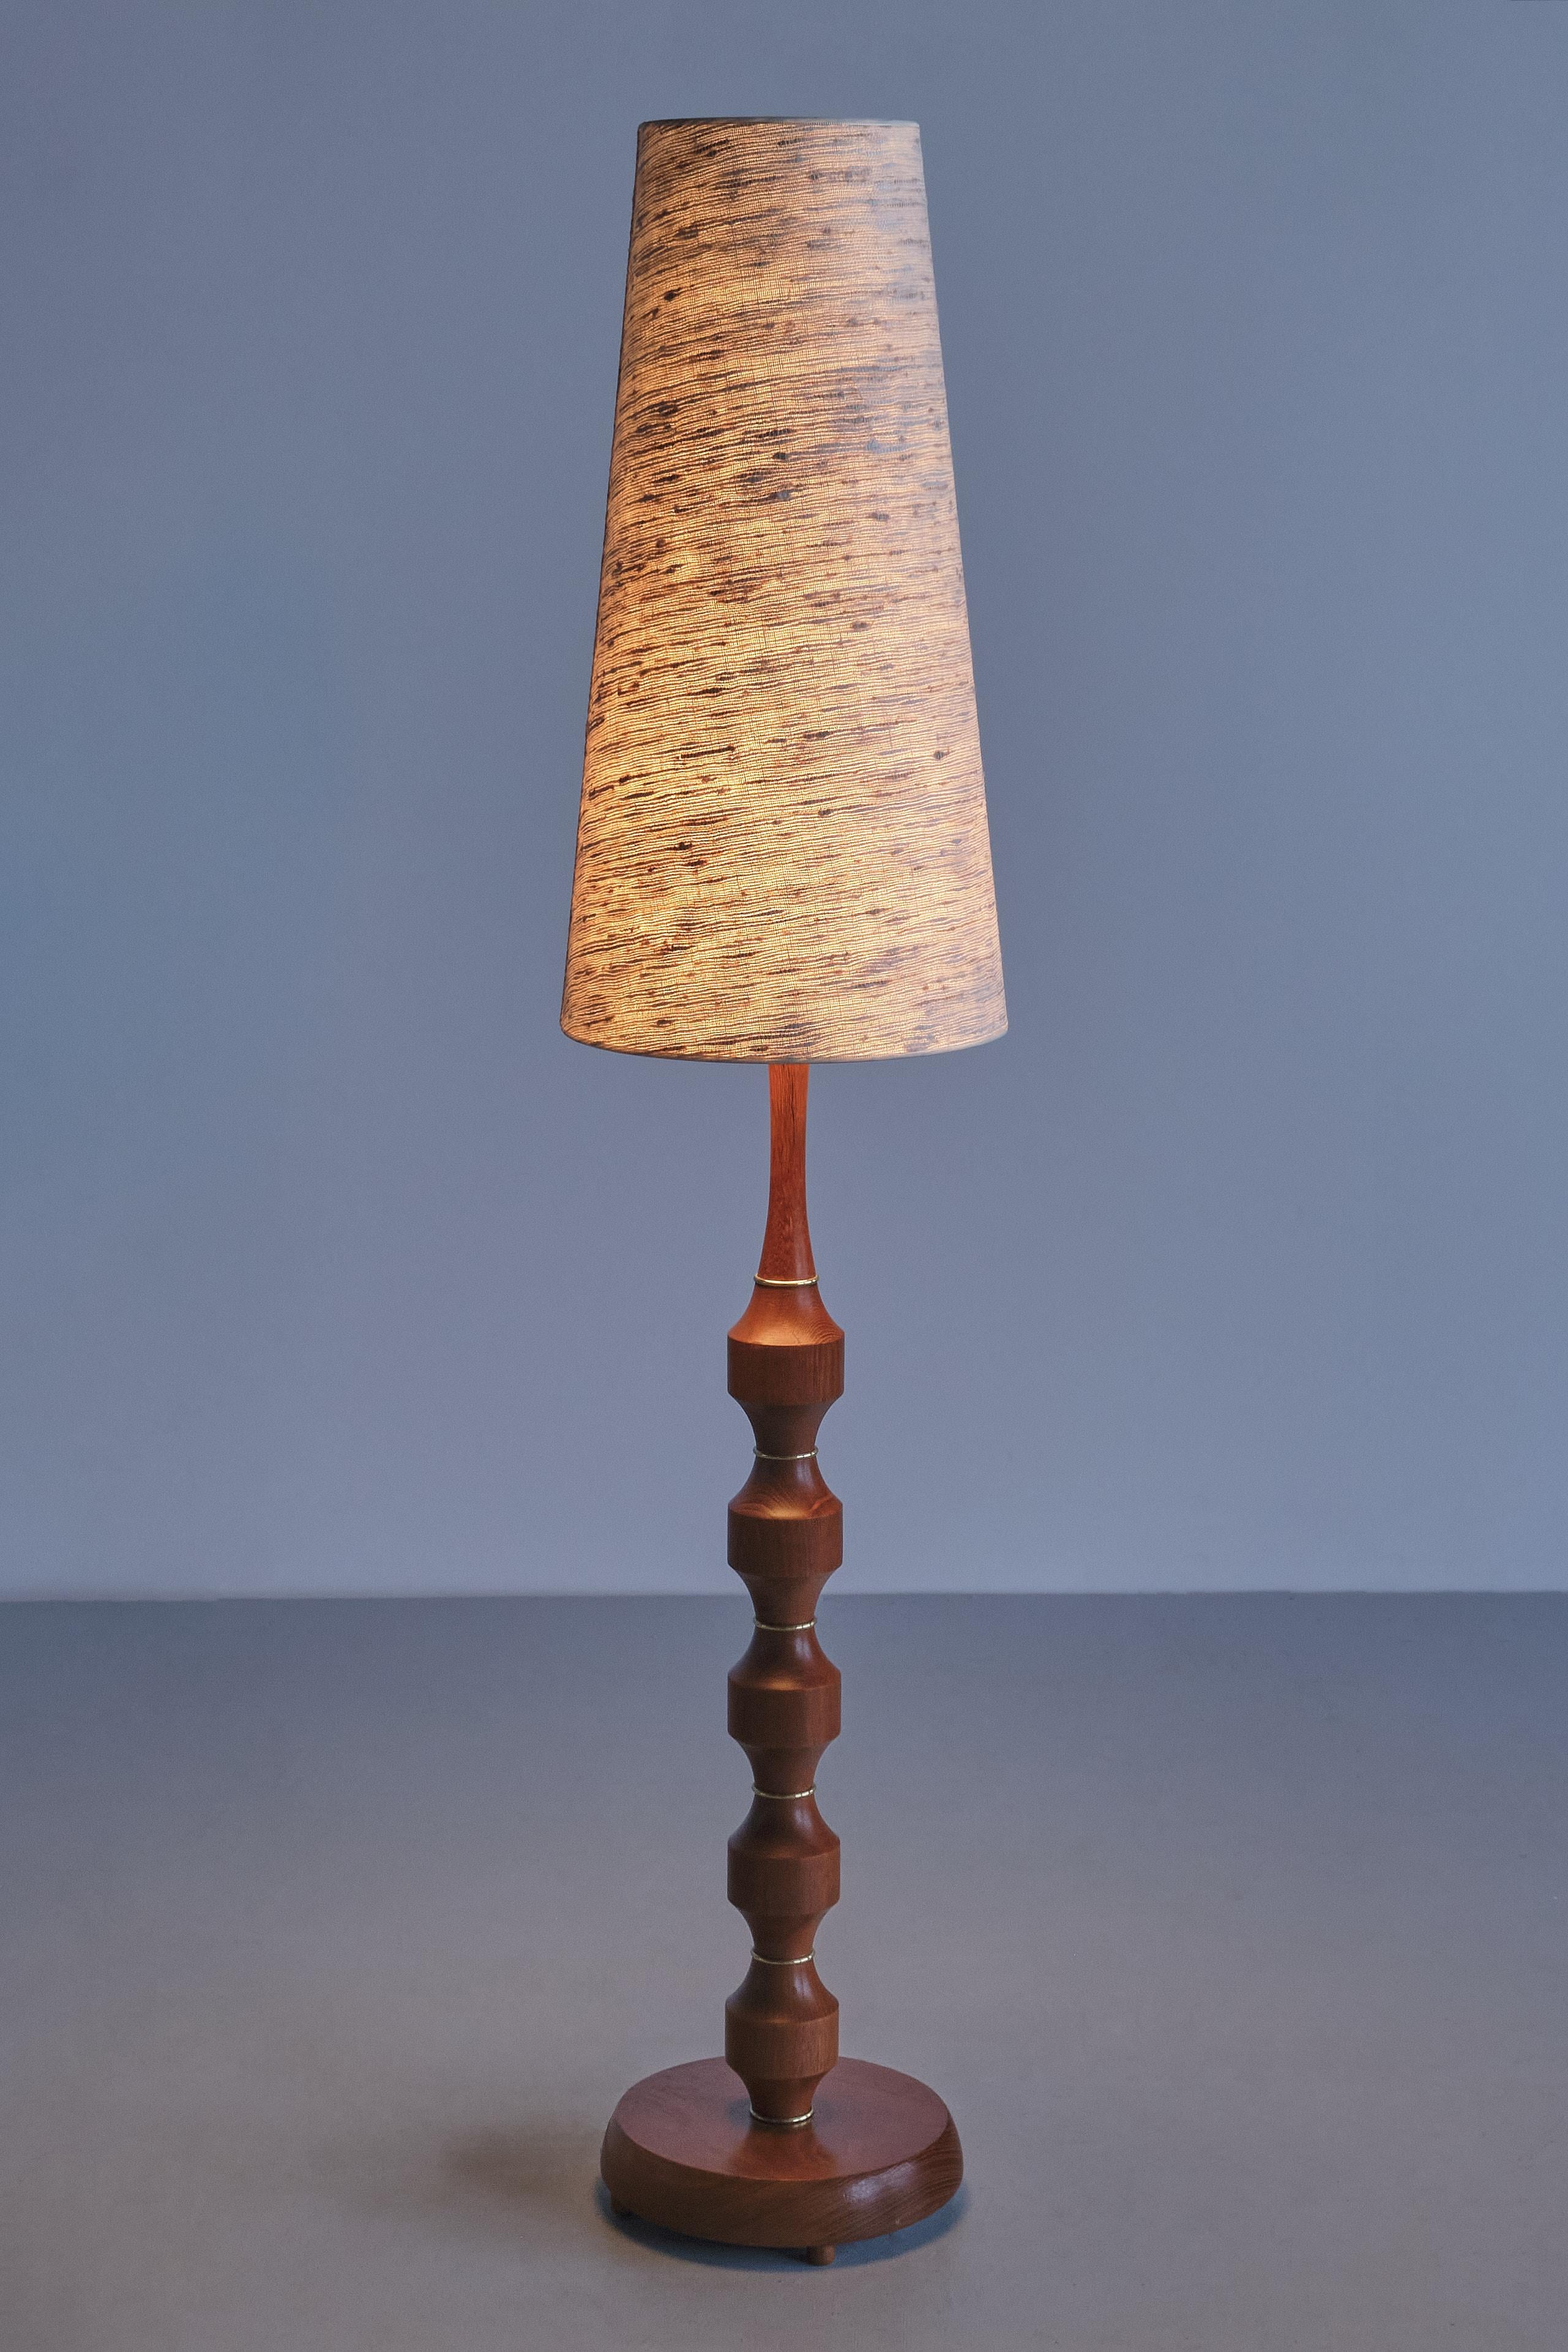 Möllers Armatur Eskilstuna Floor/ Table Lamp in Teak, Brass, Silk, Sweden, 1950s For Sale 6